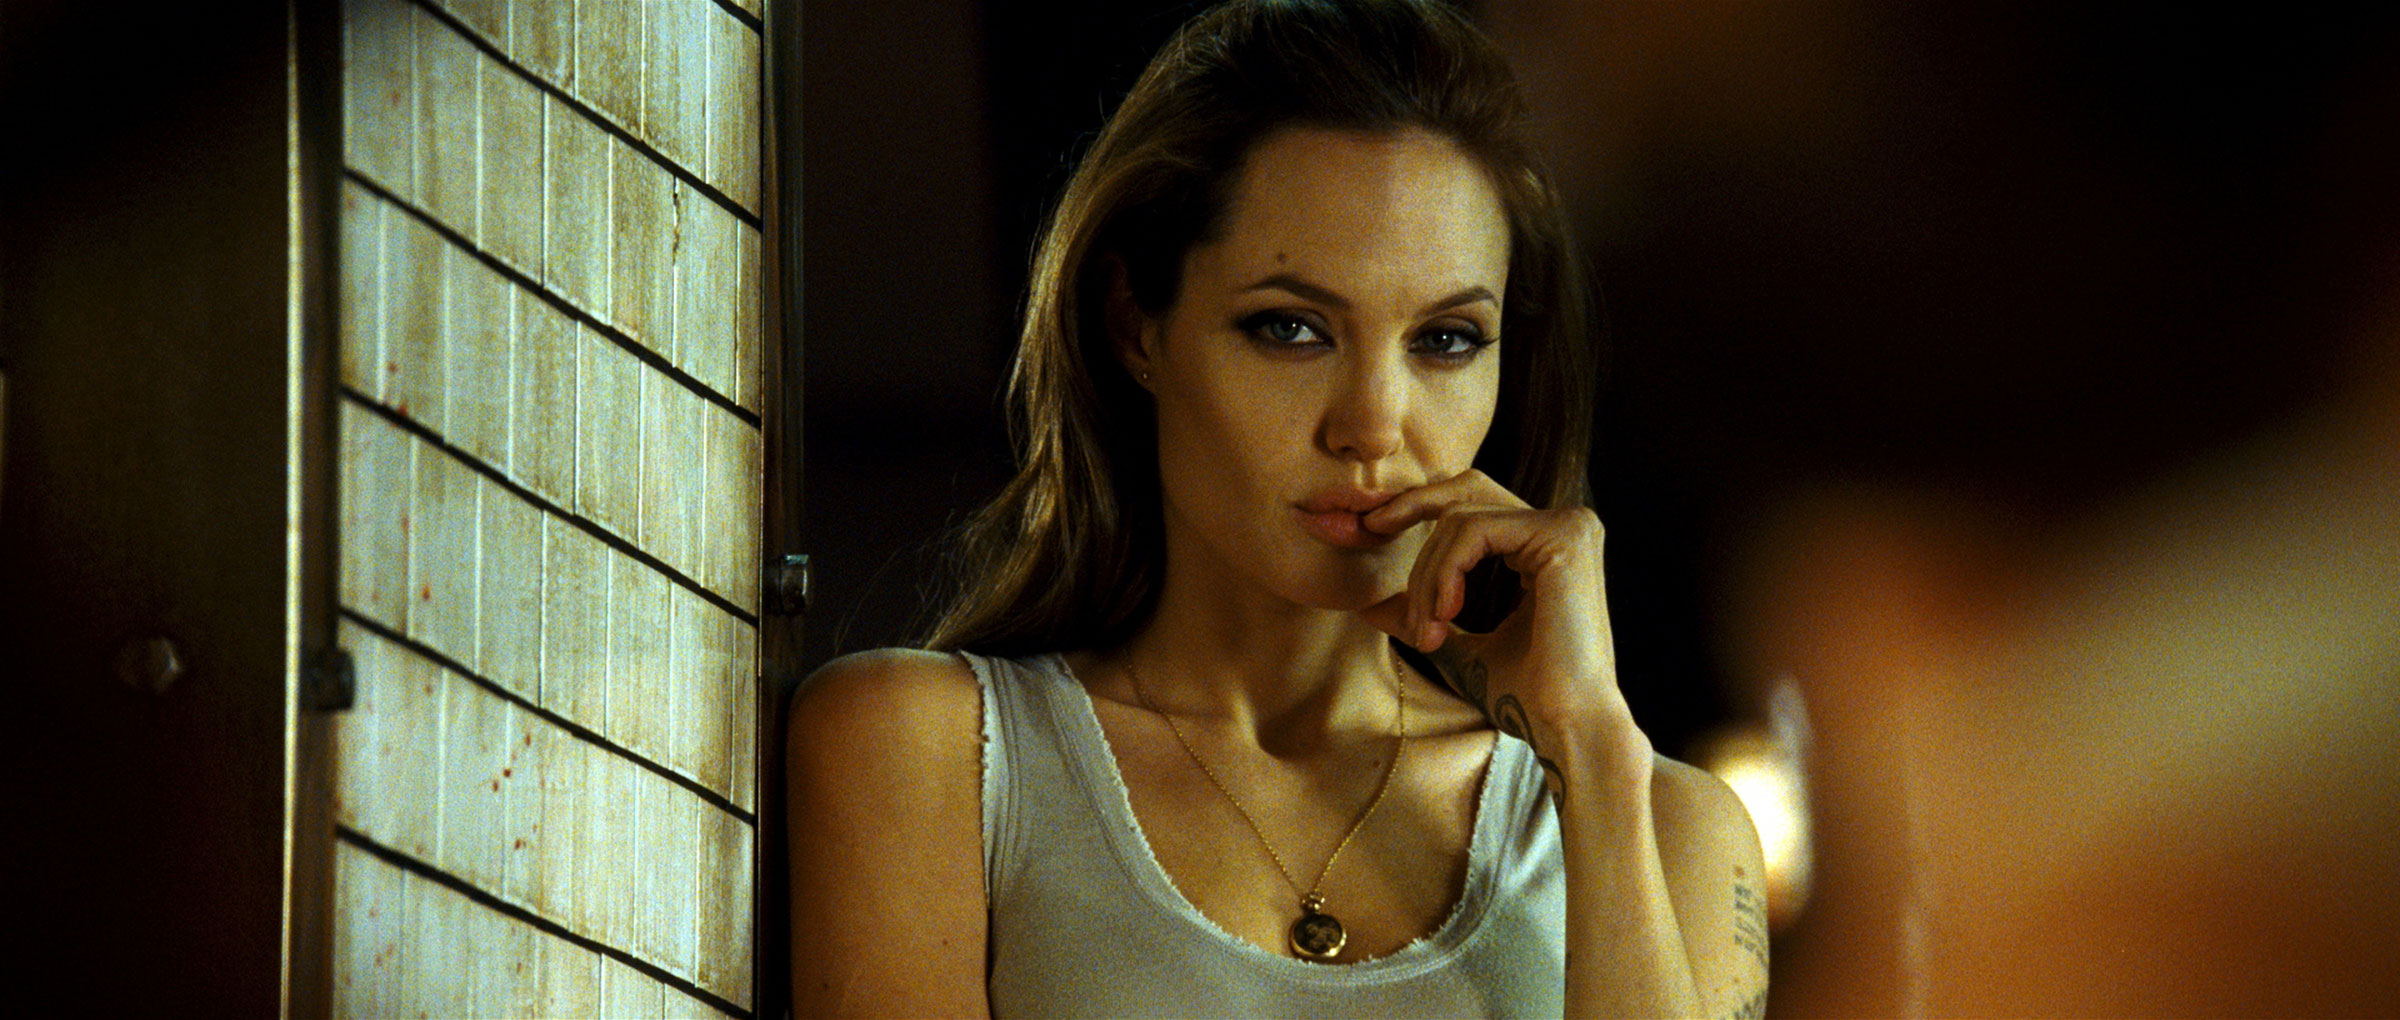 Главная роль джоли. Анджелина Джоли особо опасен.